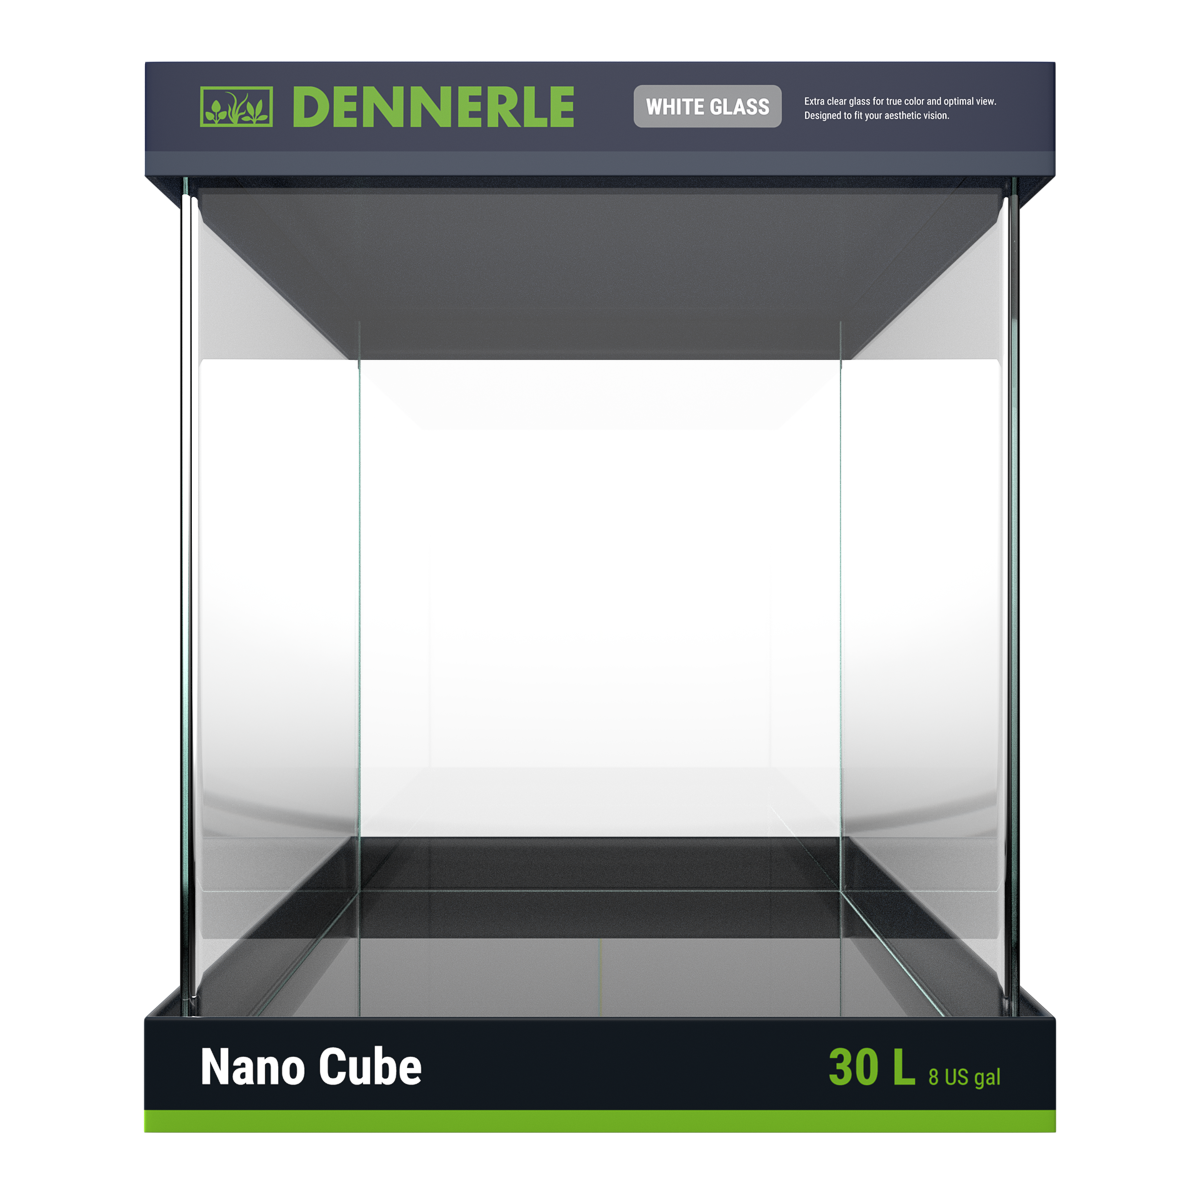 DENNERLE NANO CUBE WHITE GLASS 30 Litri